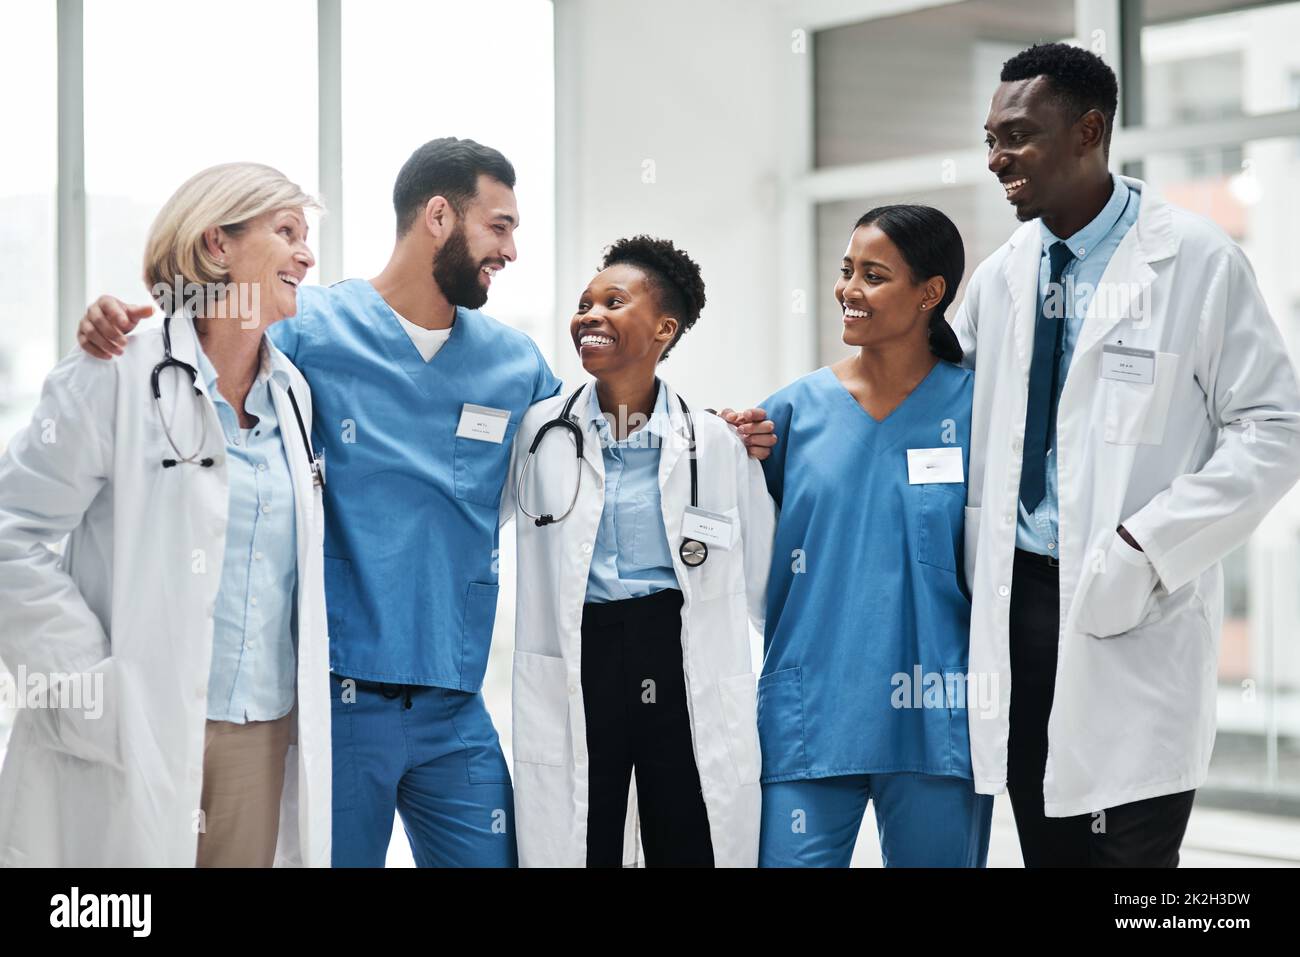 Förderung von Spitzenleistungen im Gesundheitswesen als engagiertes Team. Aufnahme einer Gruppe von Ärzten, die in einem Krankenhaus zusammenstehen. Stockfoto